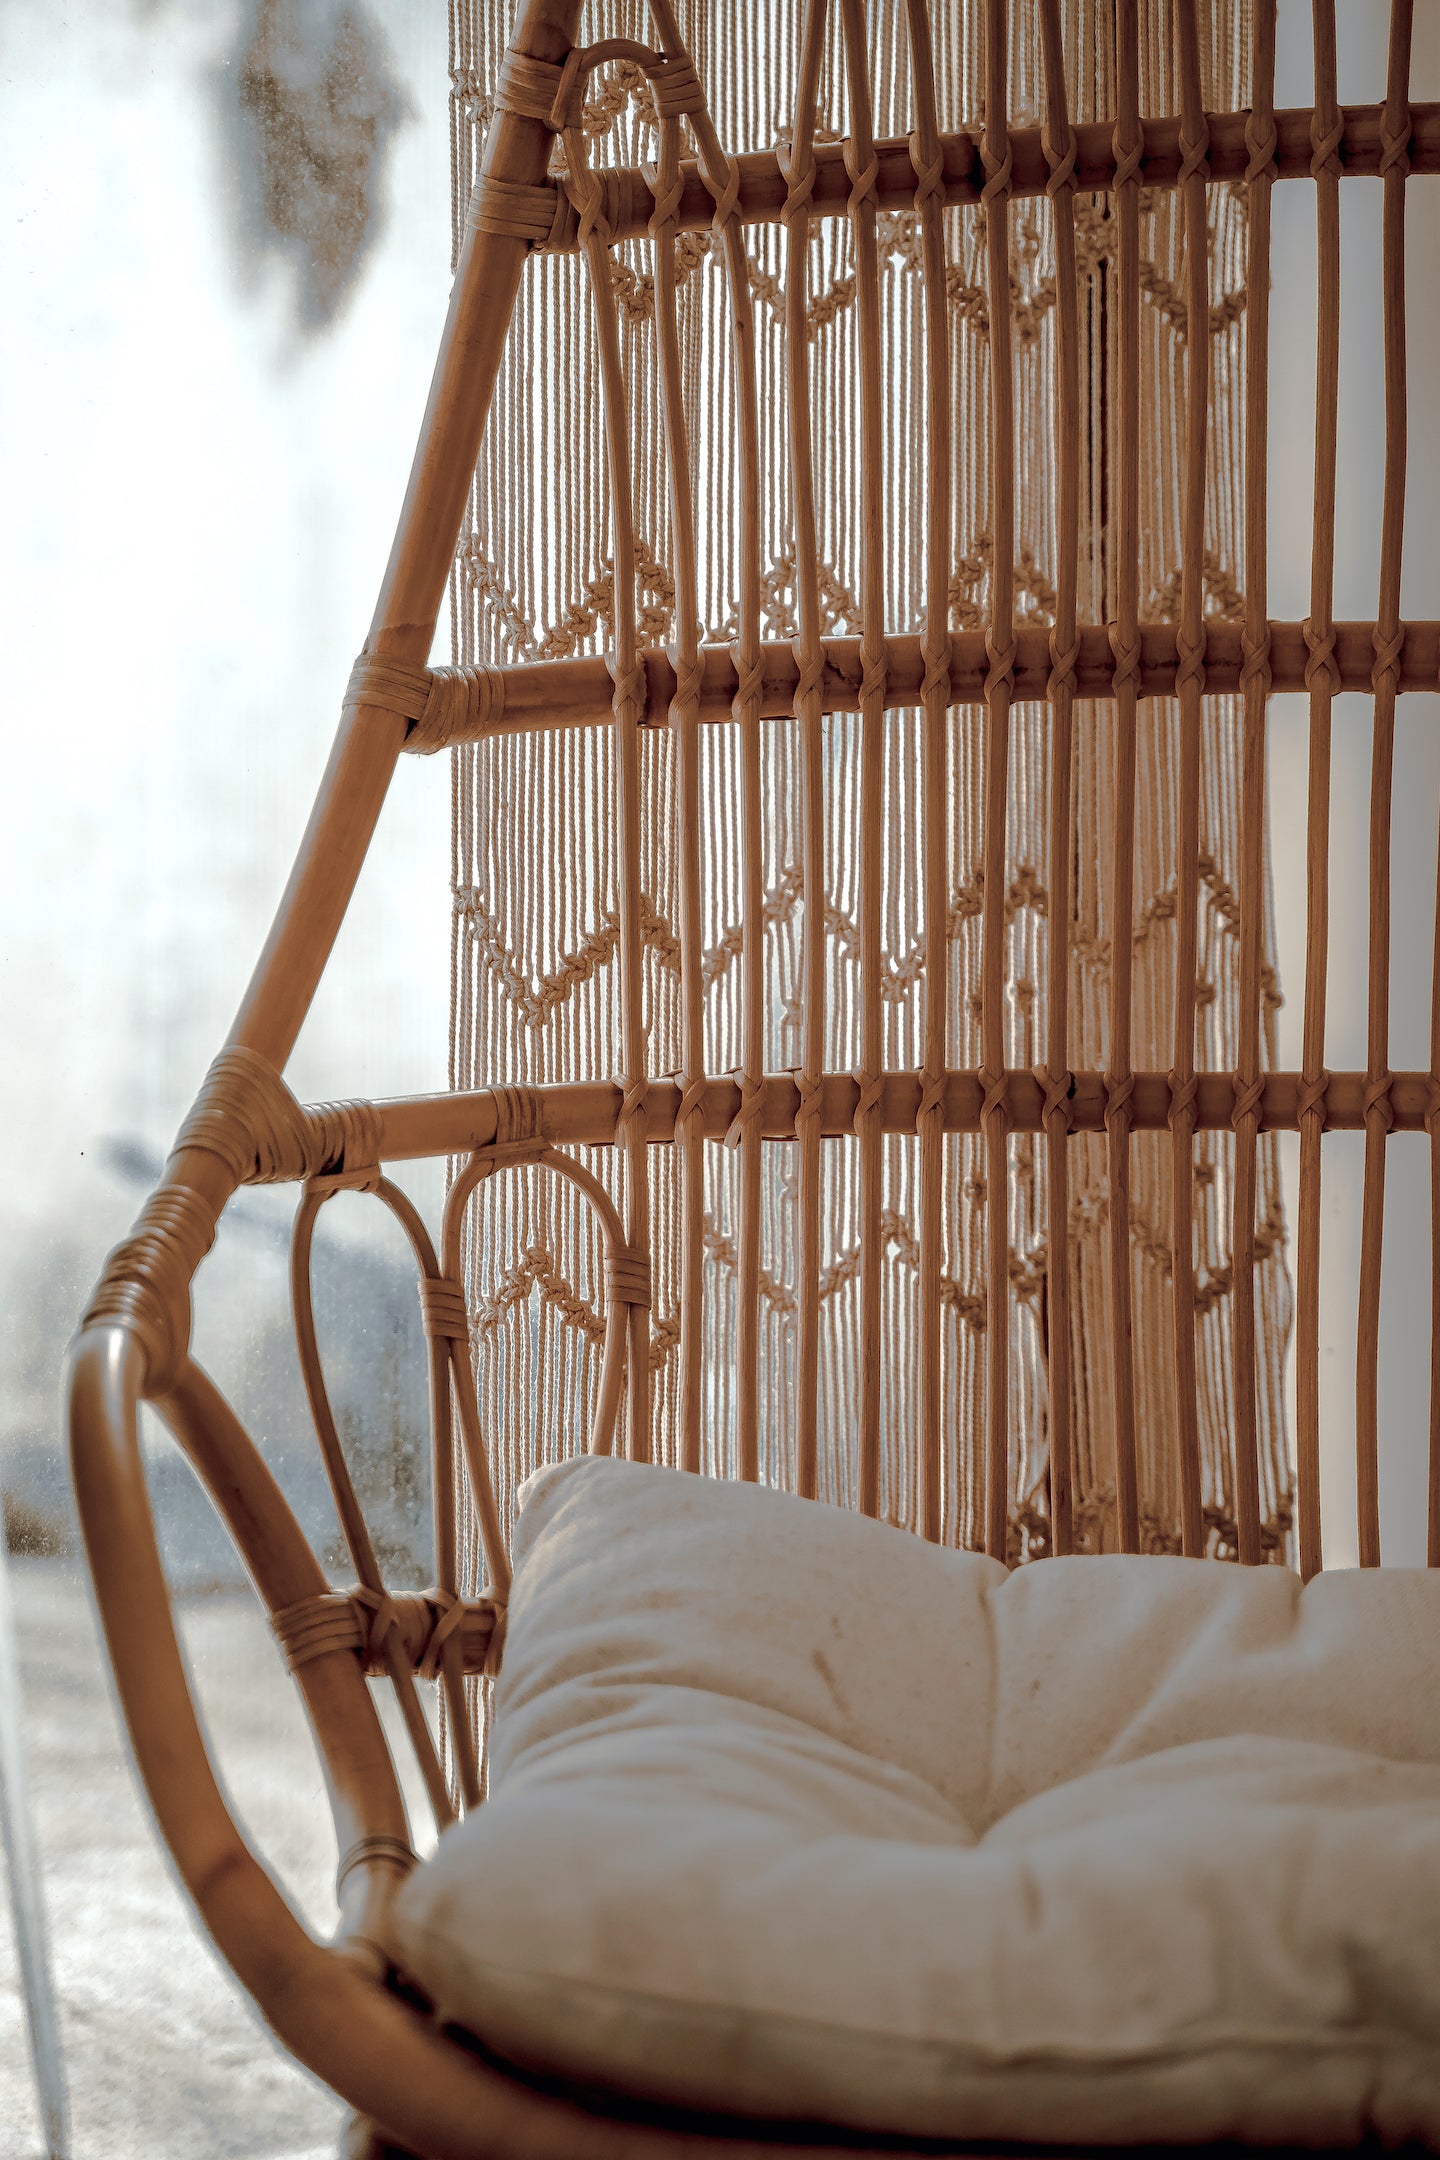 Rattan Chair - Rattan Furniture - Boho Style Chair - Monnarita - handmade chair